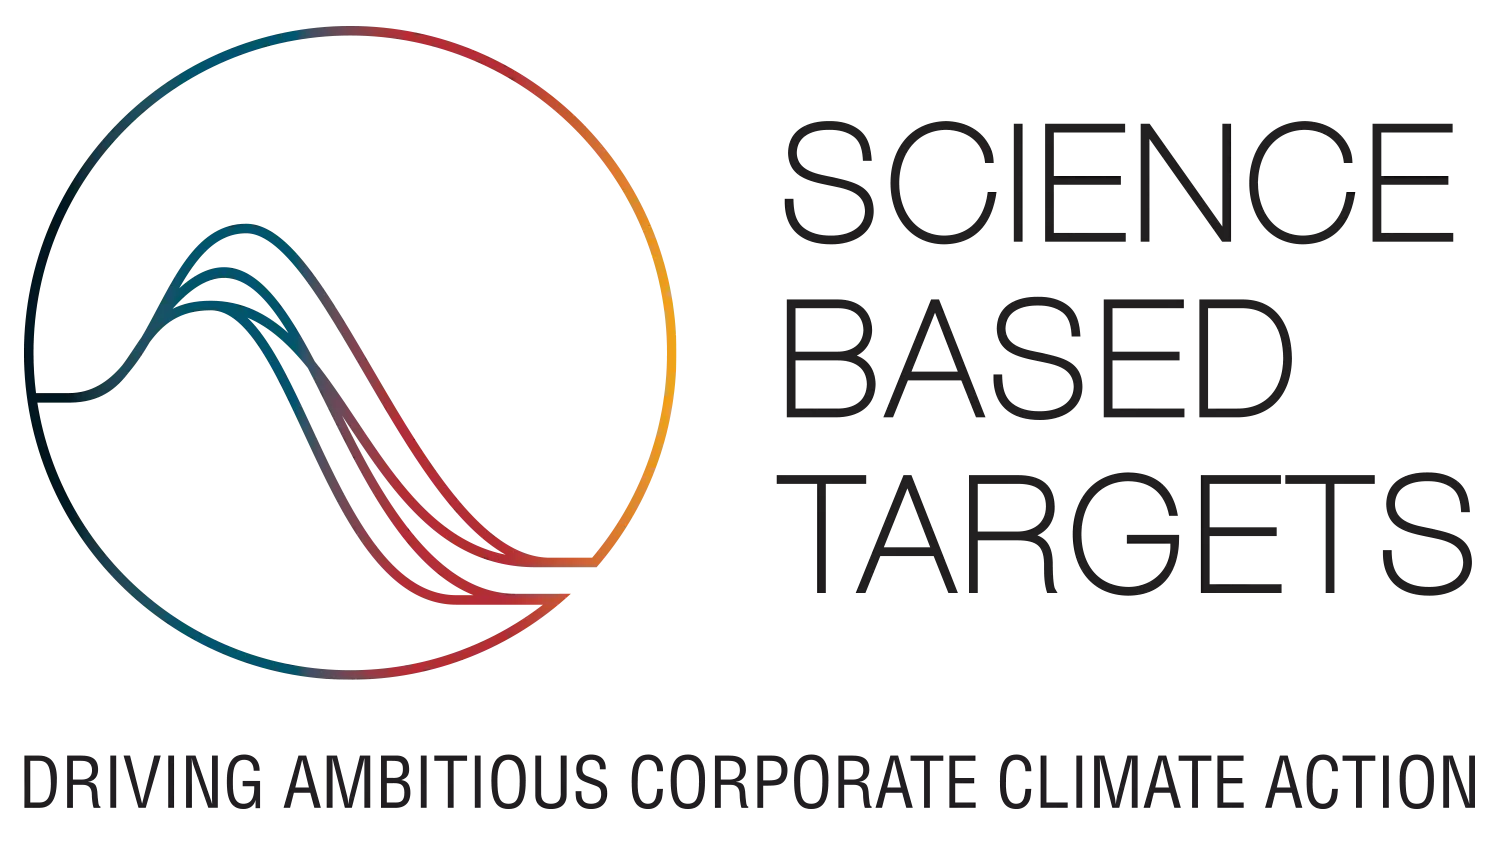 Science based targets - logo